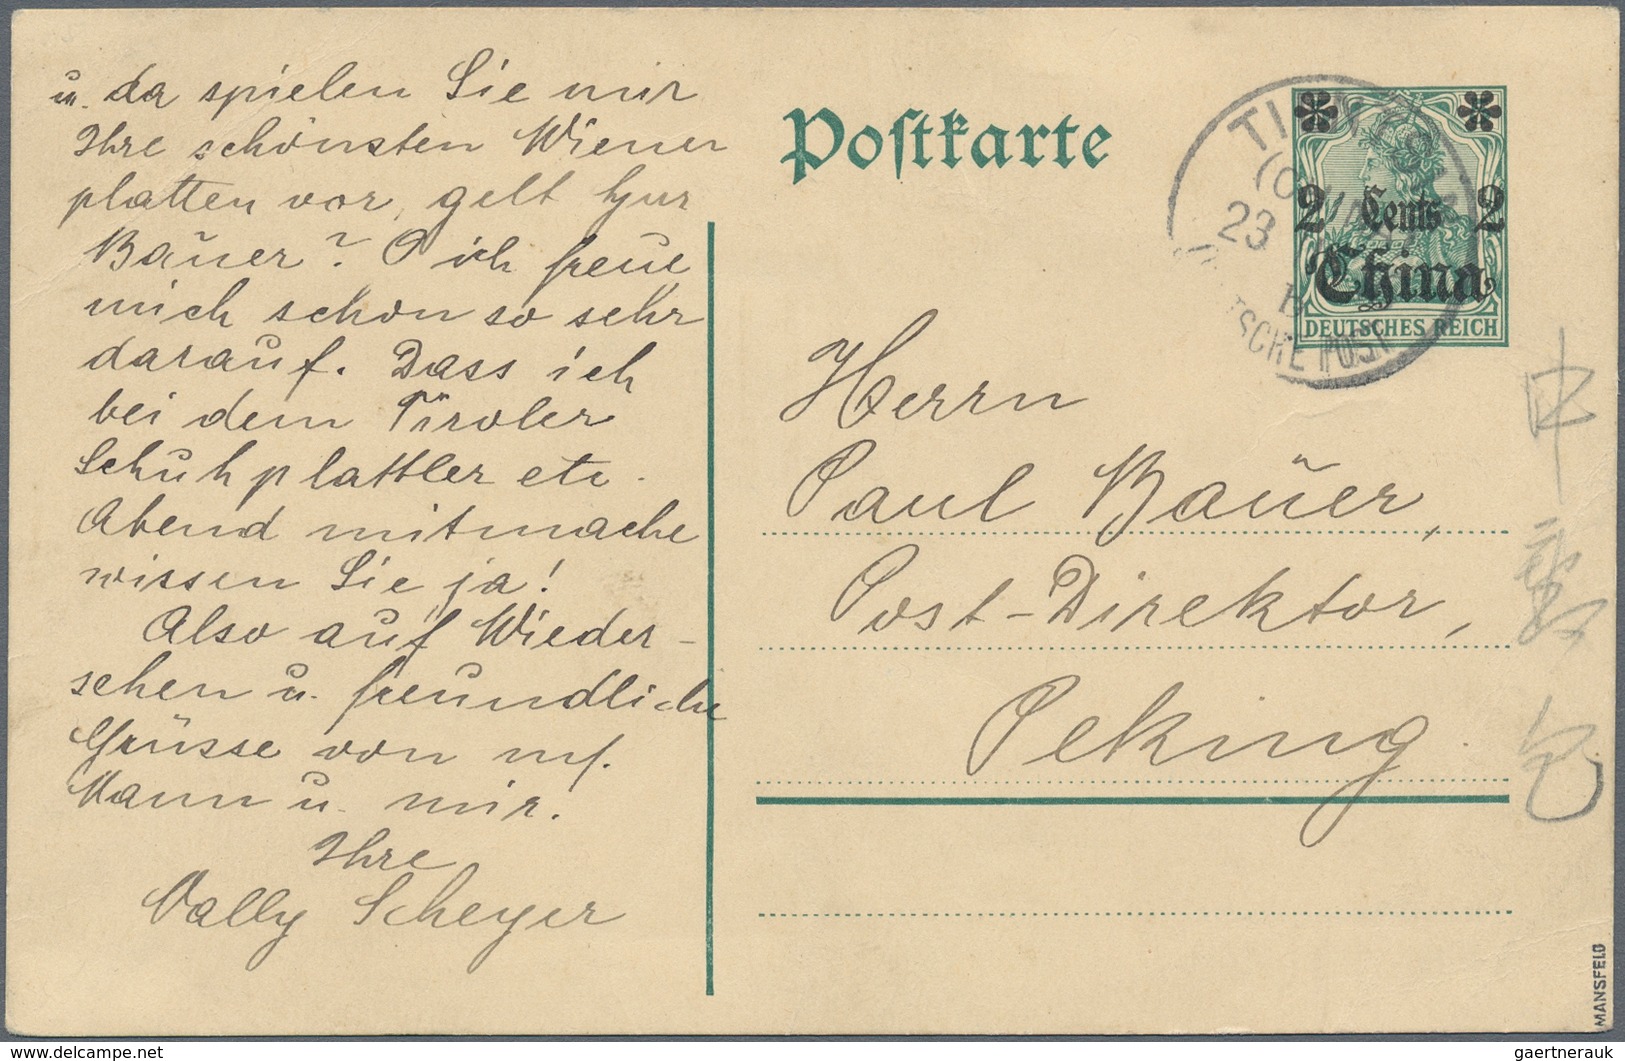 Deutsche Post In China - Ganzsachen: 1916, Ganzsachenkarte "2 Cent" Auf 5 Pfg. Germania Mit Wz. Ab " - China (kantoren)